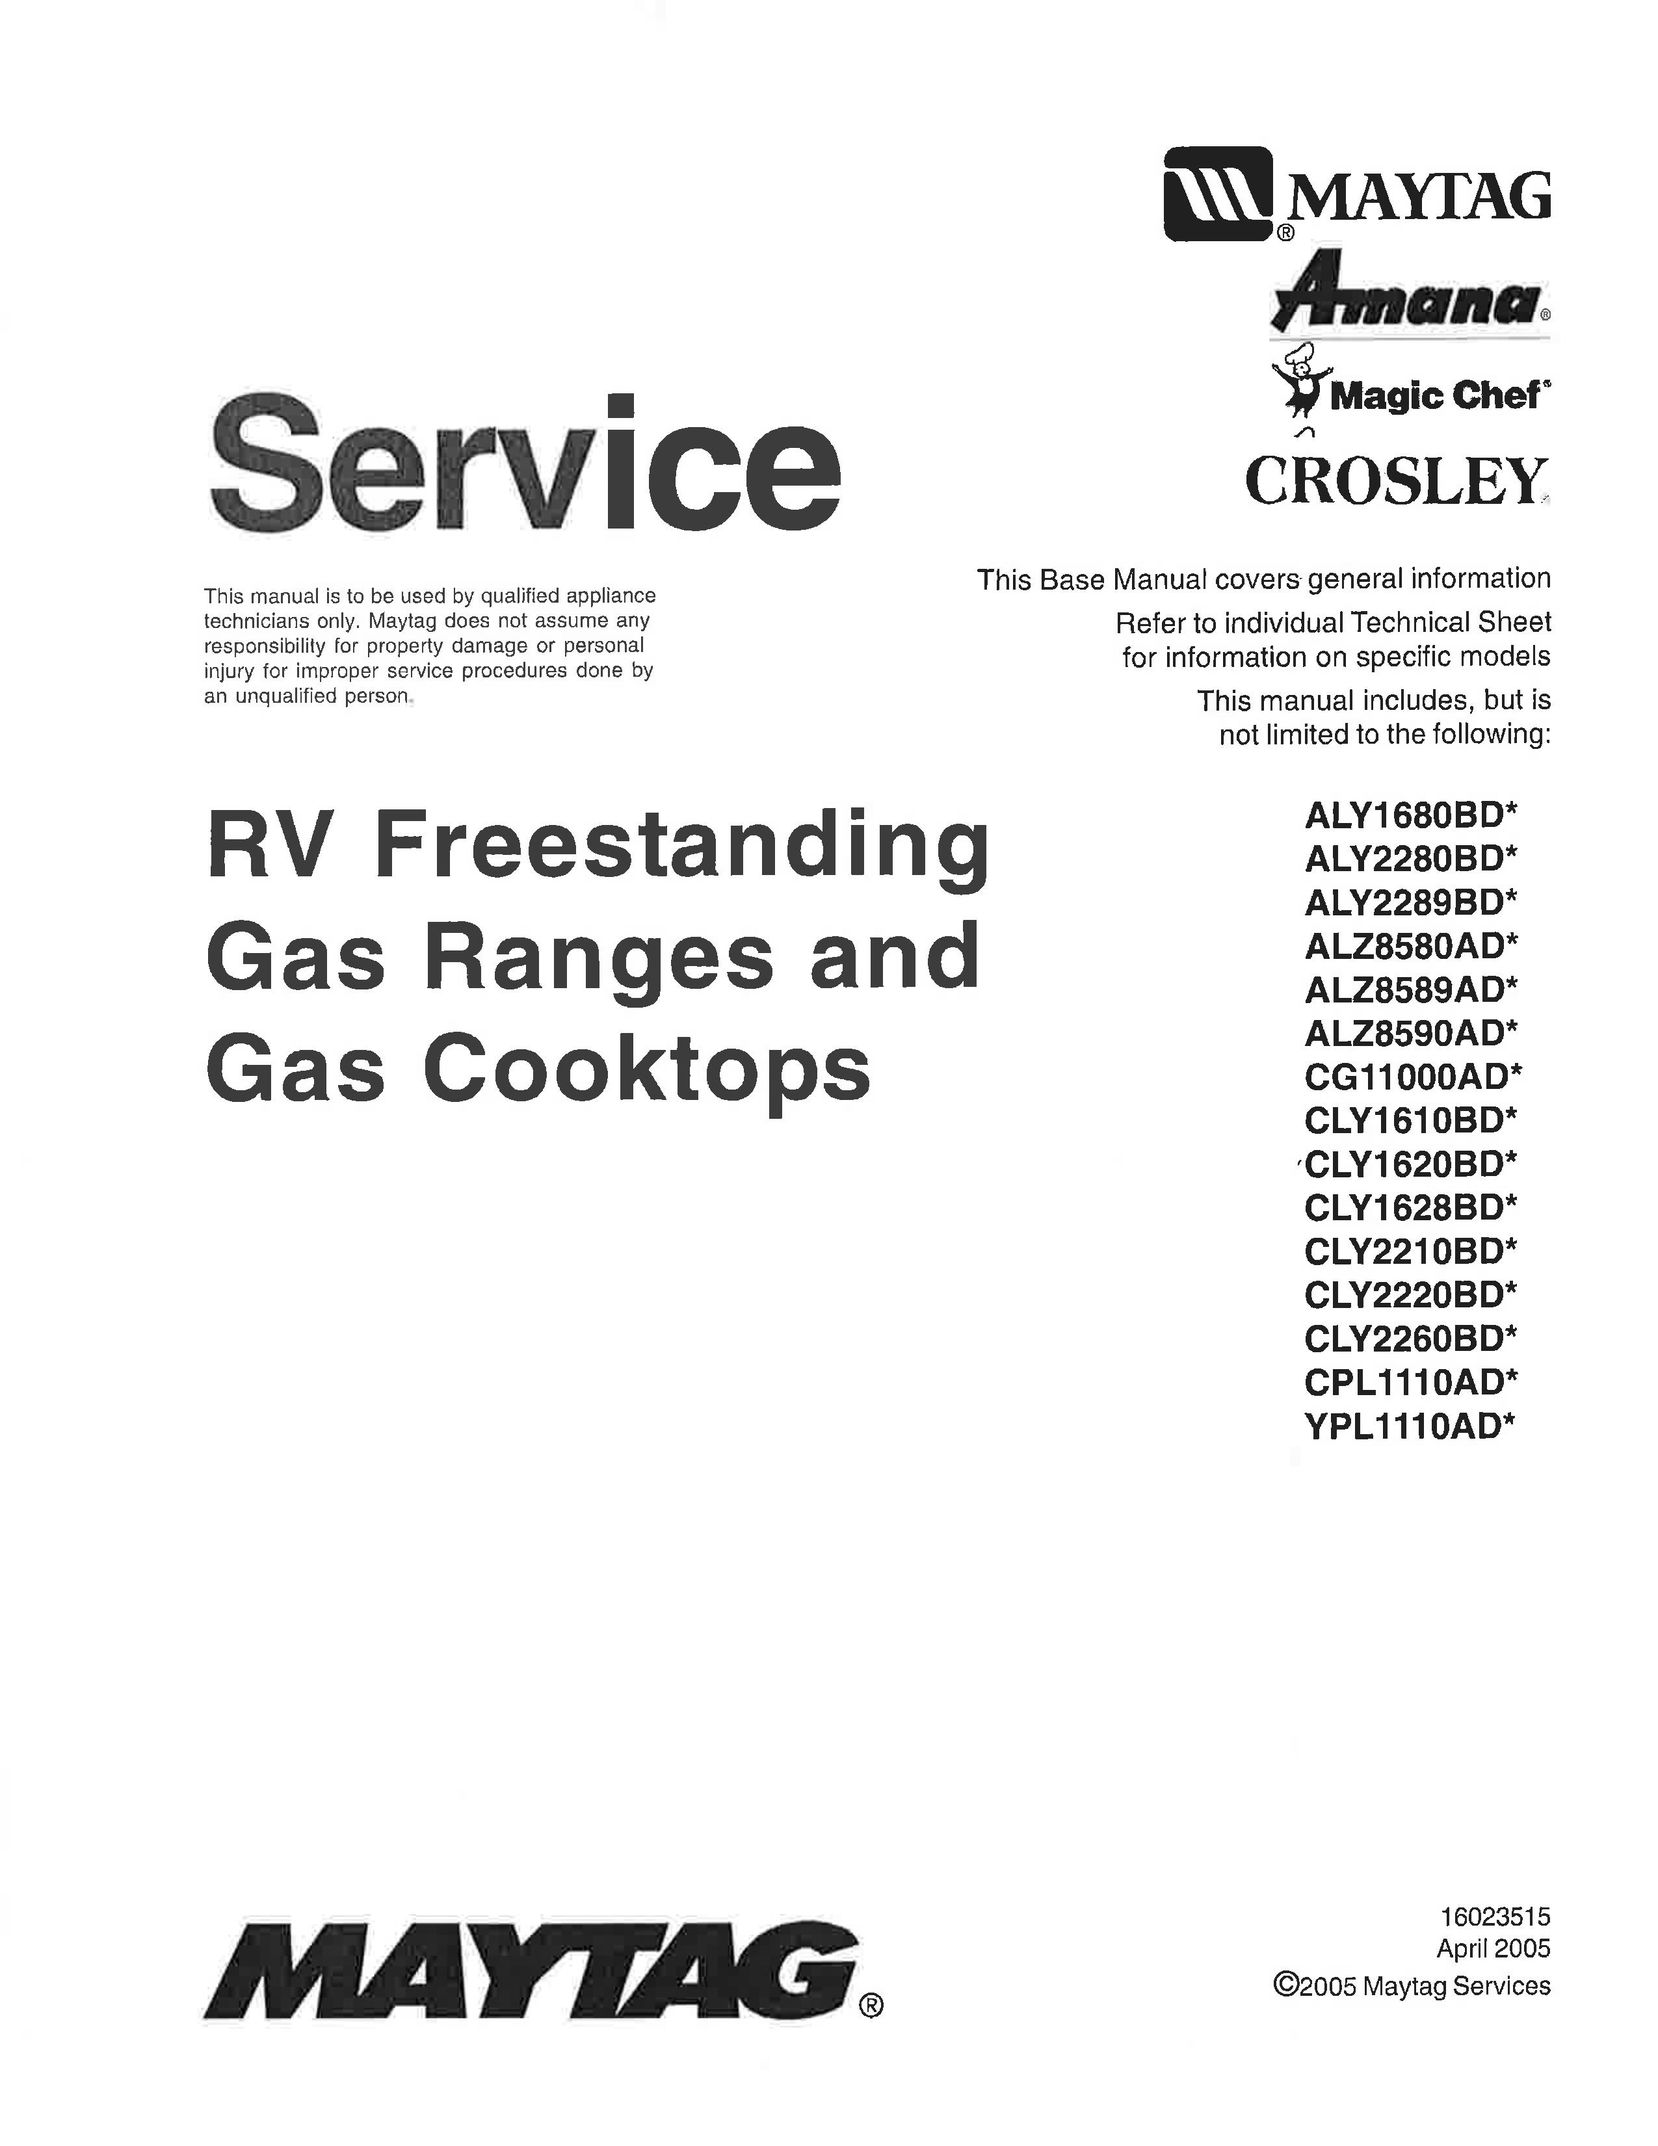 Maytag CG11000AD Cooktop User Manual